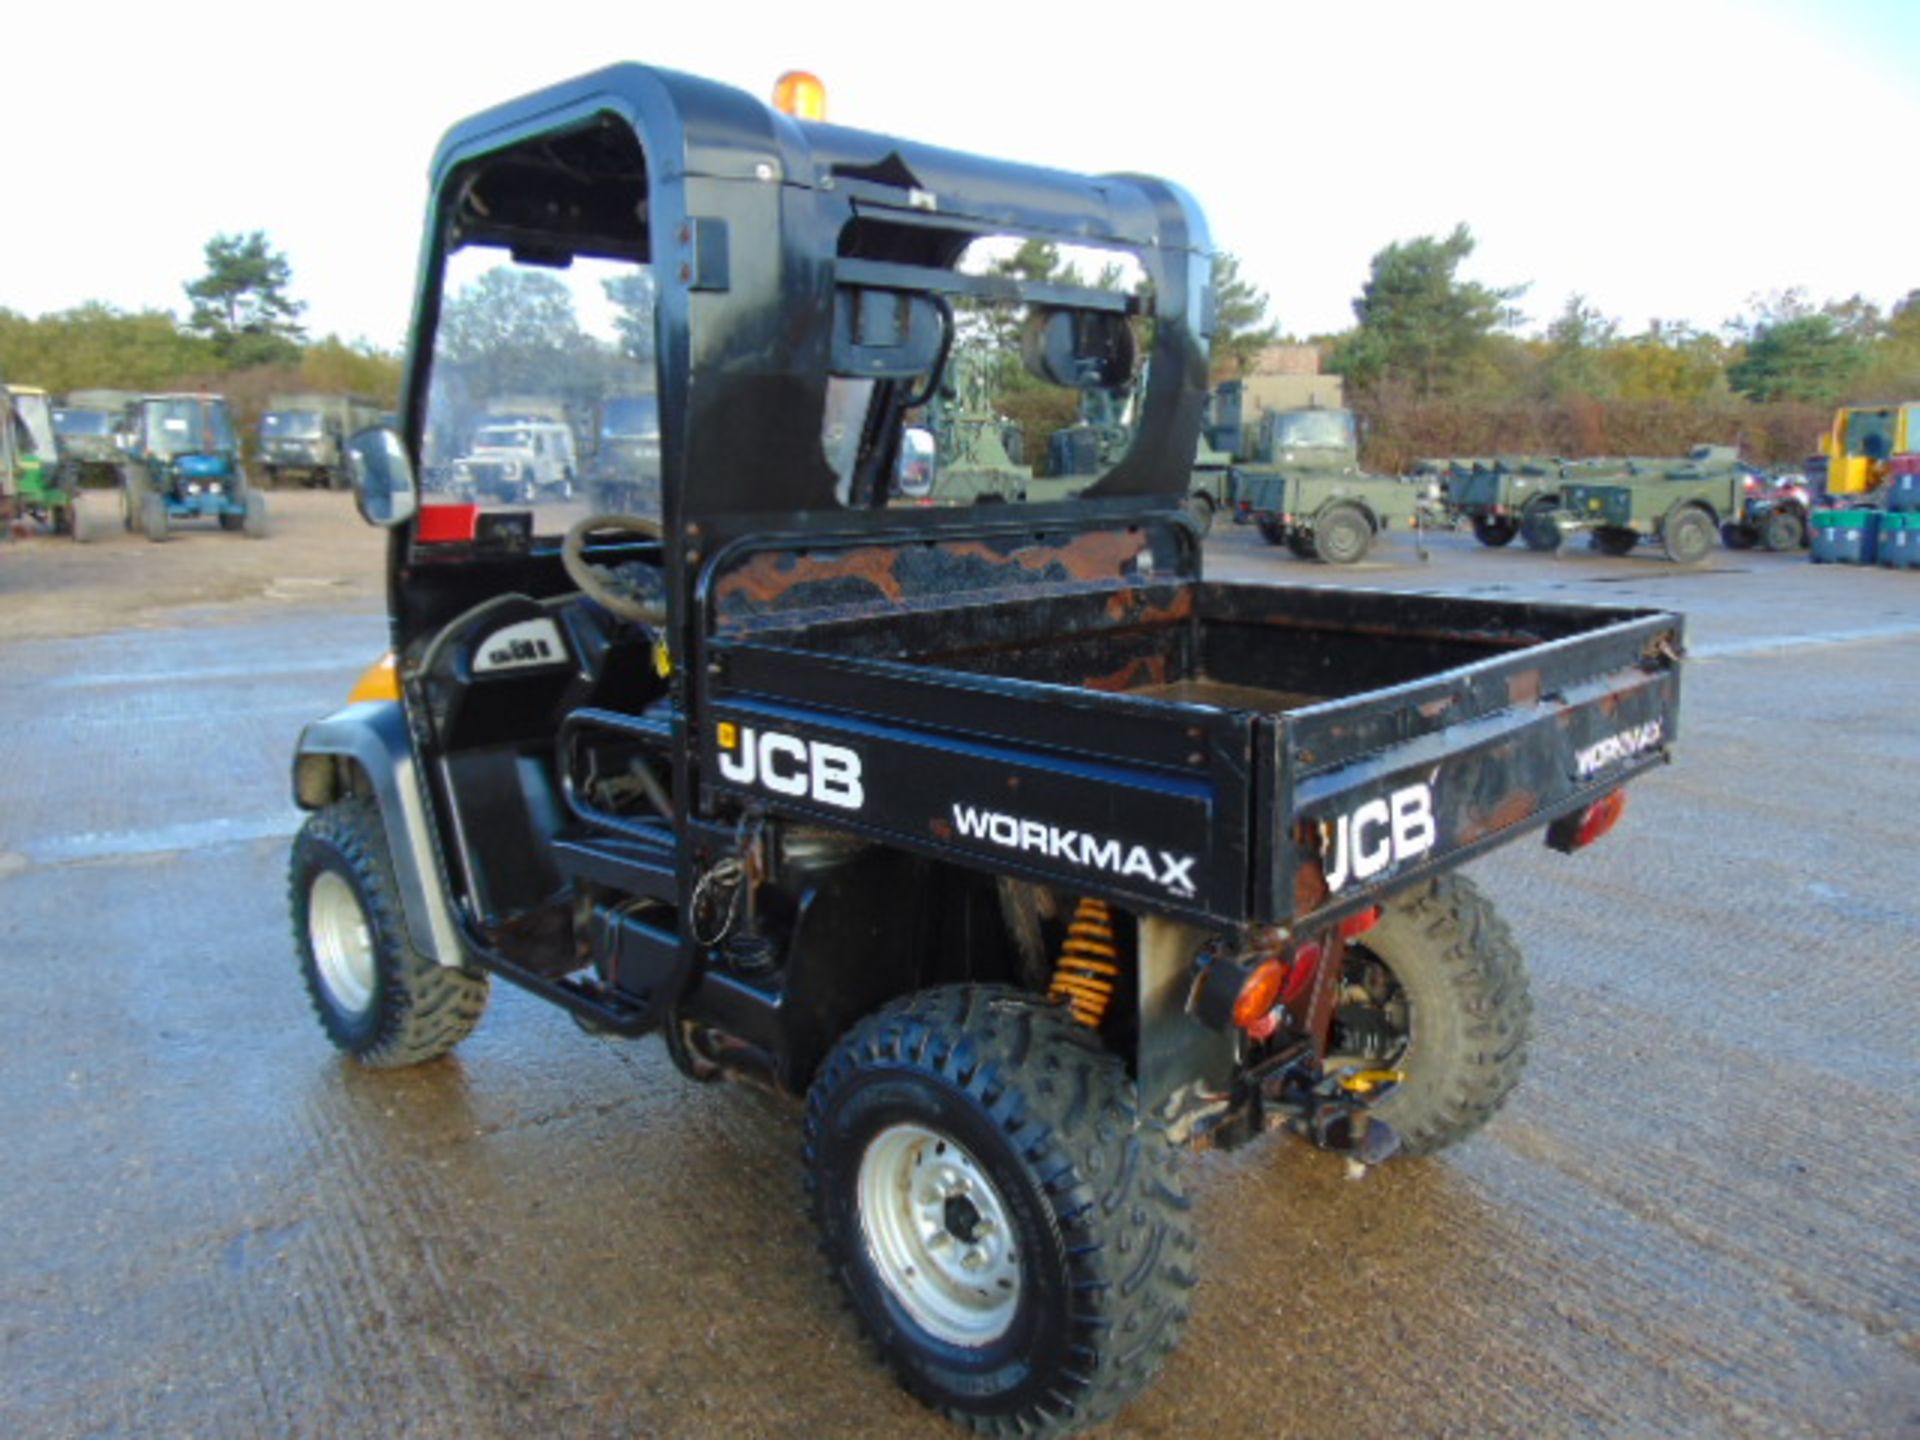 JCB Workmax 800D 4WD Diesel Utility Vehicle UTV - Image 8 of 21